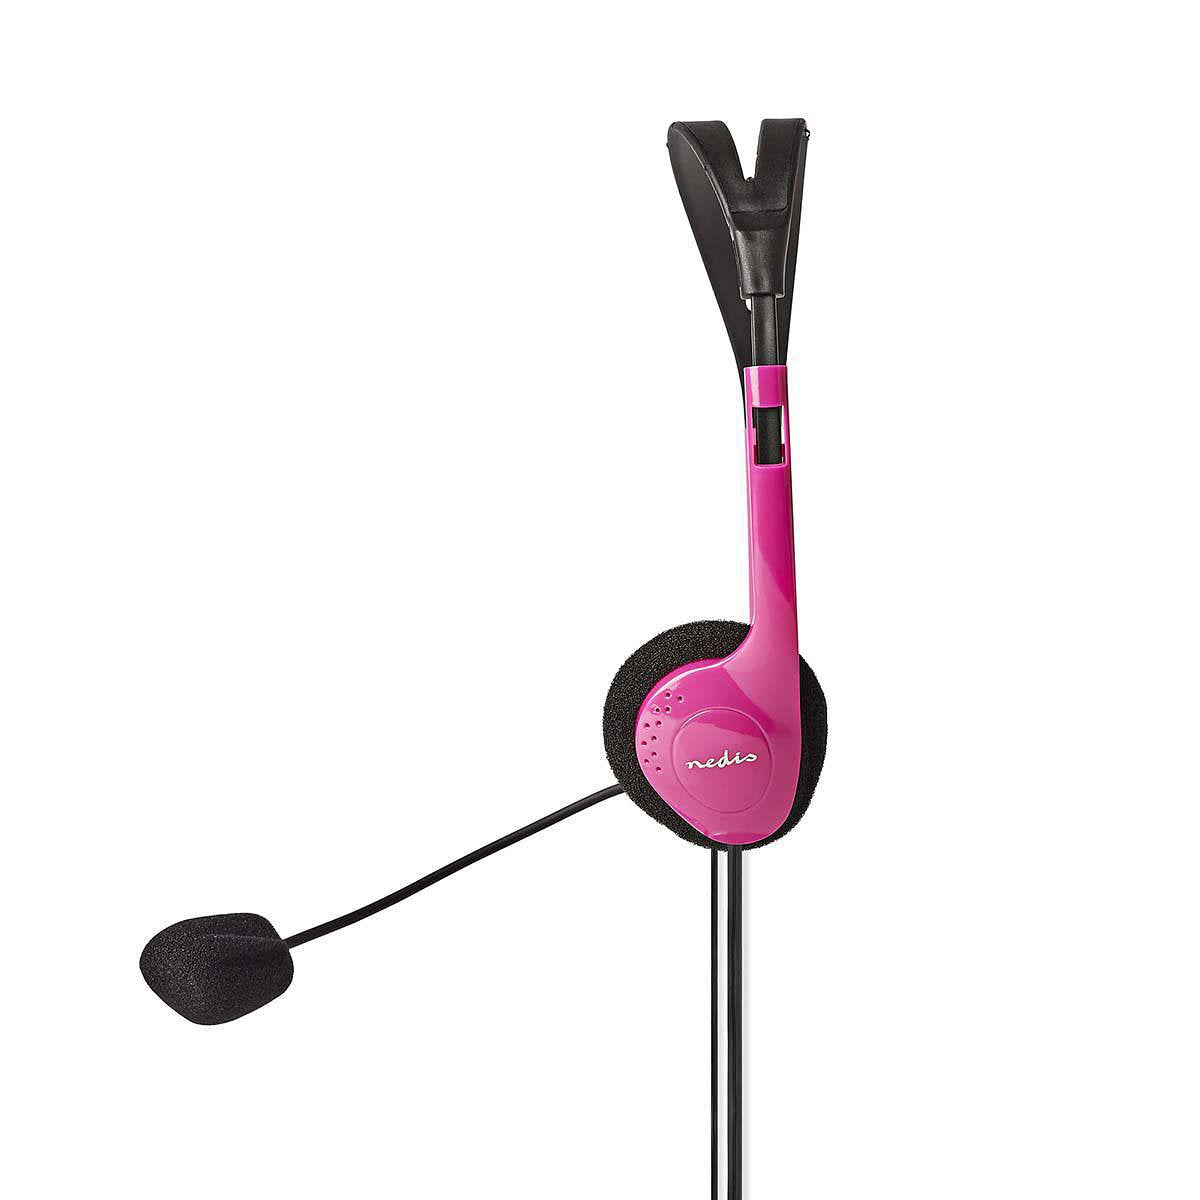 PC-Headset | On-Ear | 2x 3,5 mm Connectoren | 2,0 m | Roze Nedis